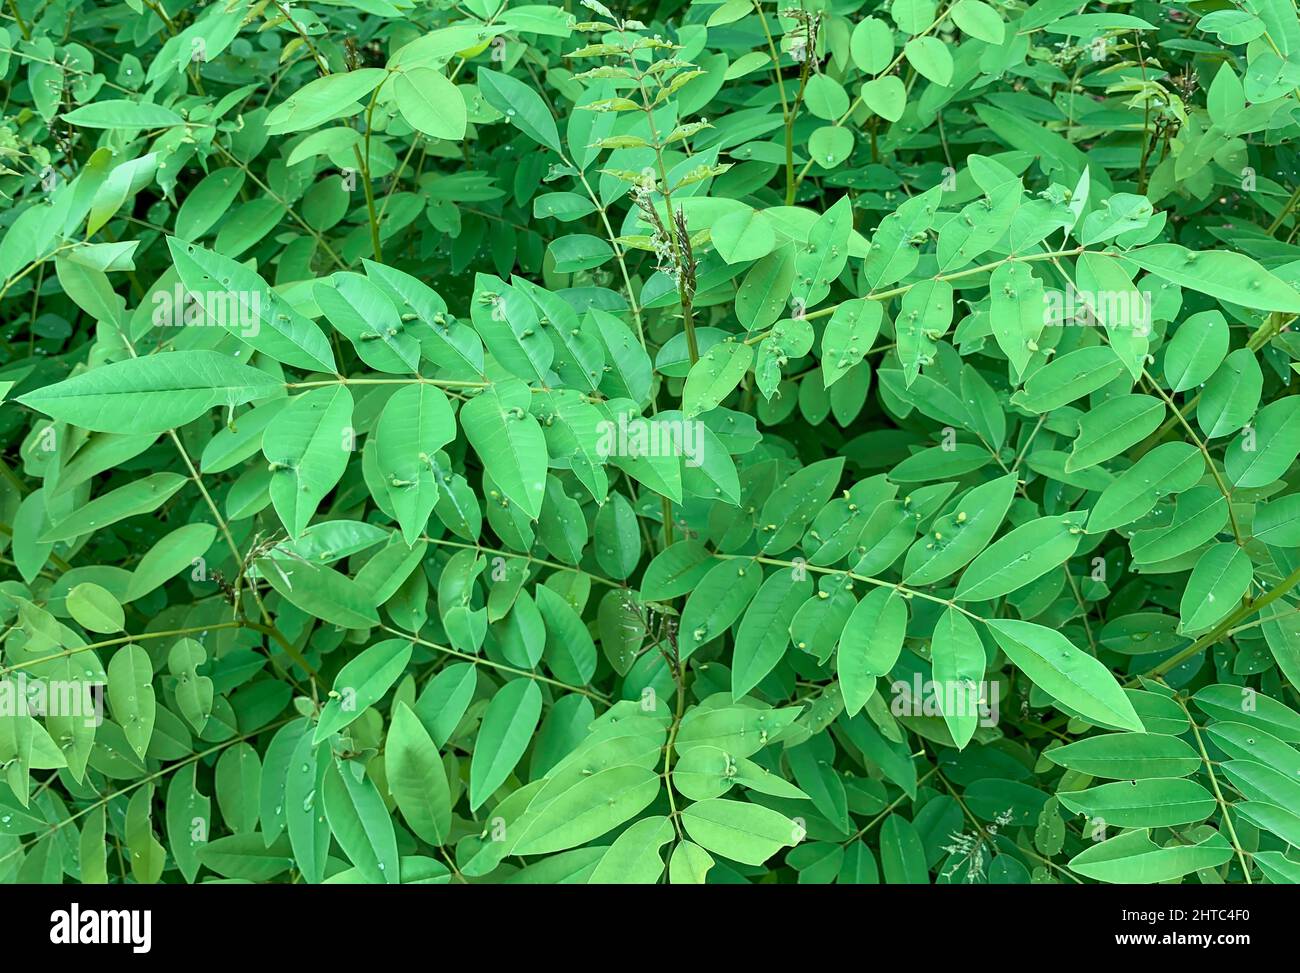 Plante indigo (Indigofera tinctoria), plantes vertes à haute valeur nutritive qui sont utilisées comme fourrage alternatif Banque D'Images